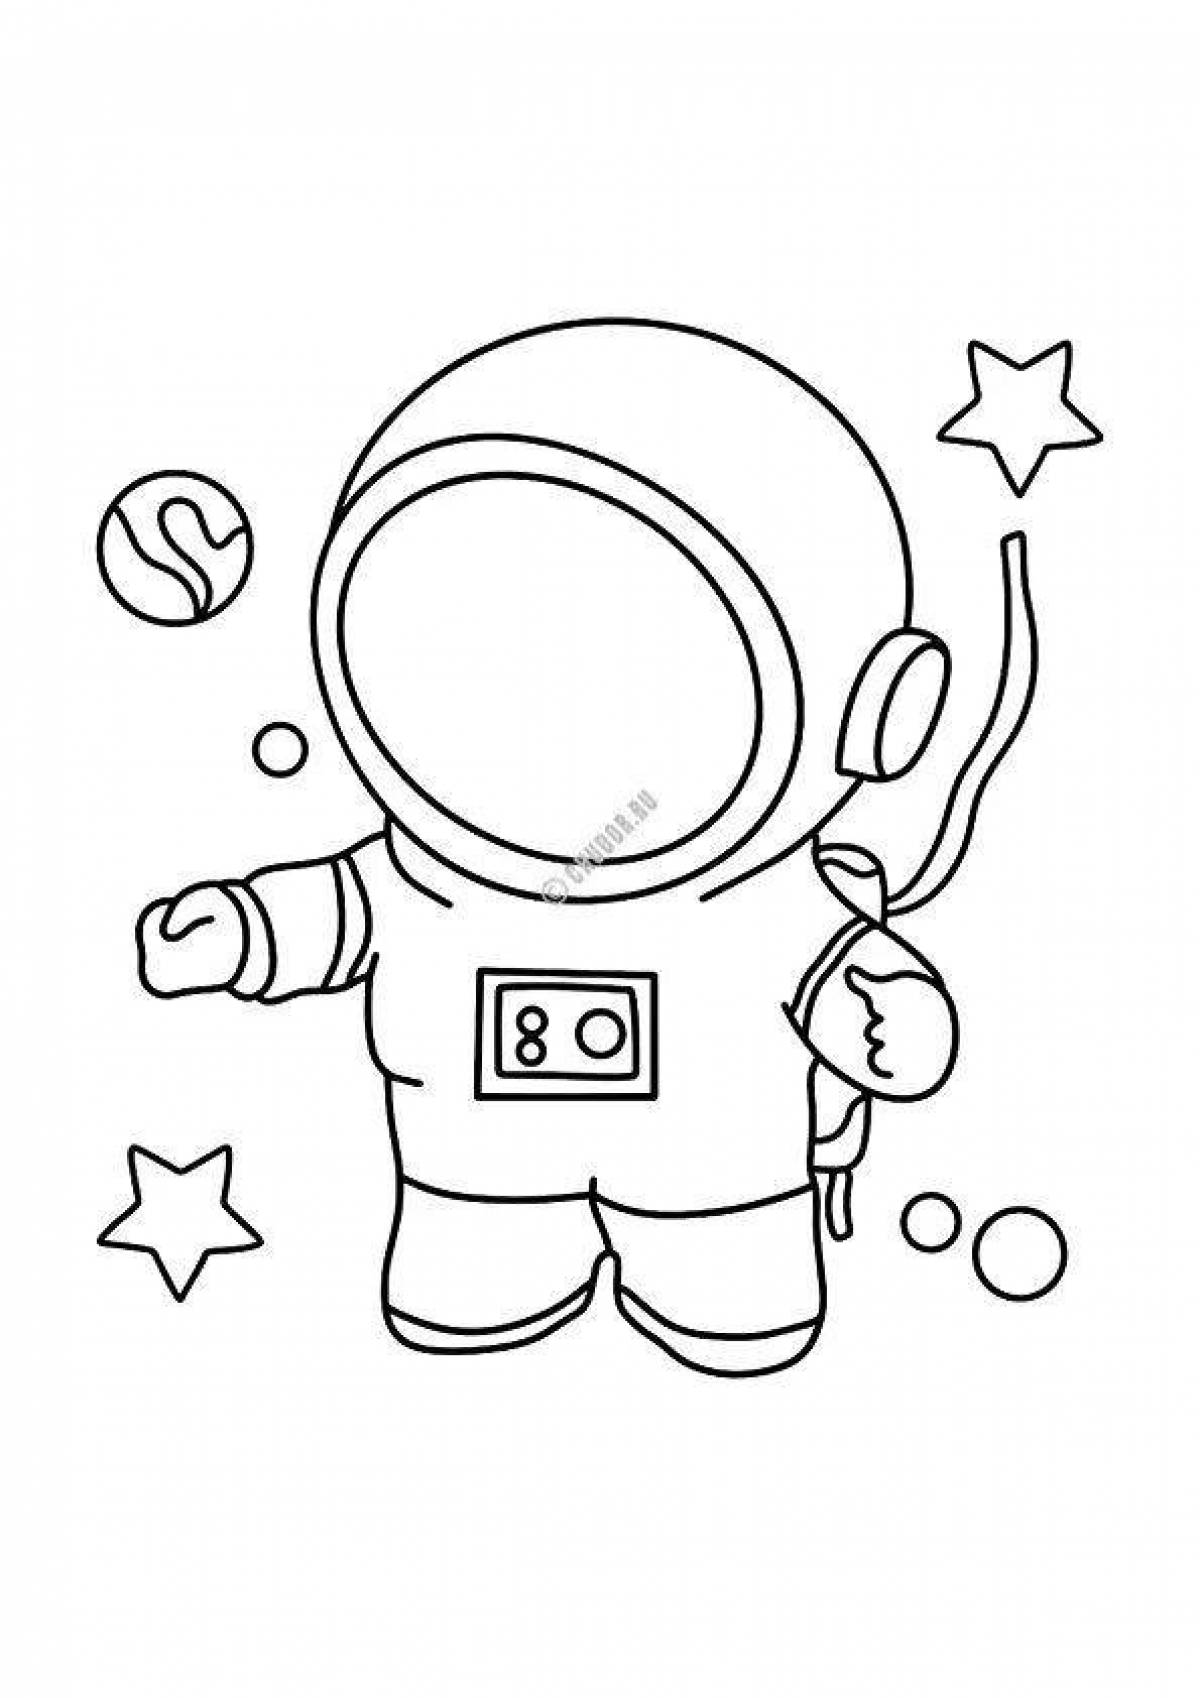 Как разукрасить космонавта. Космонавт раскраска. Космонавт раскраска для детей. Космонавт для раскрашивания для детей. Космонавт раскраска для малышей.